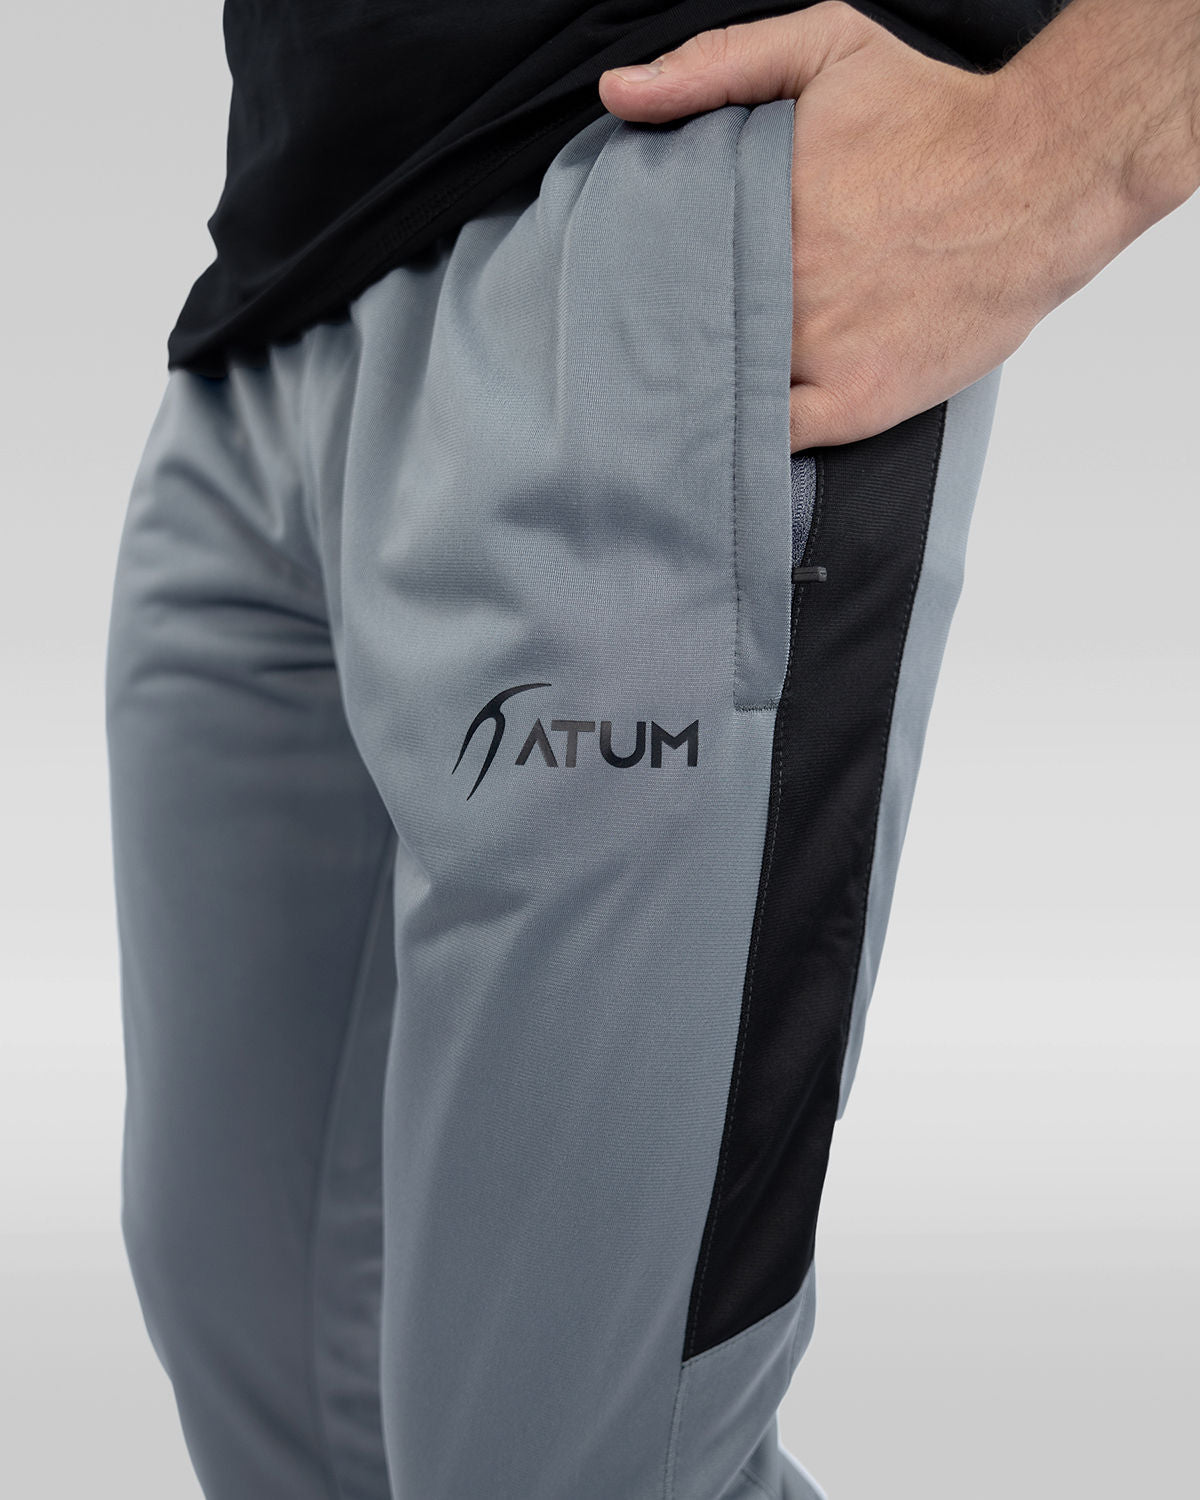 Atum men's dynamic sweatpants